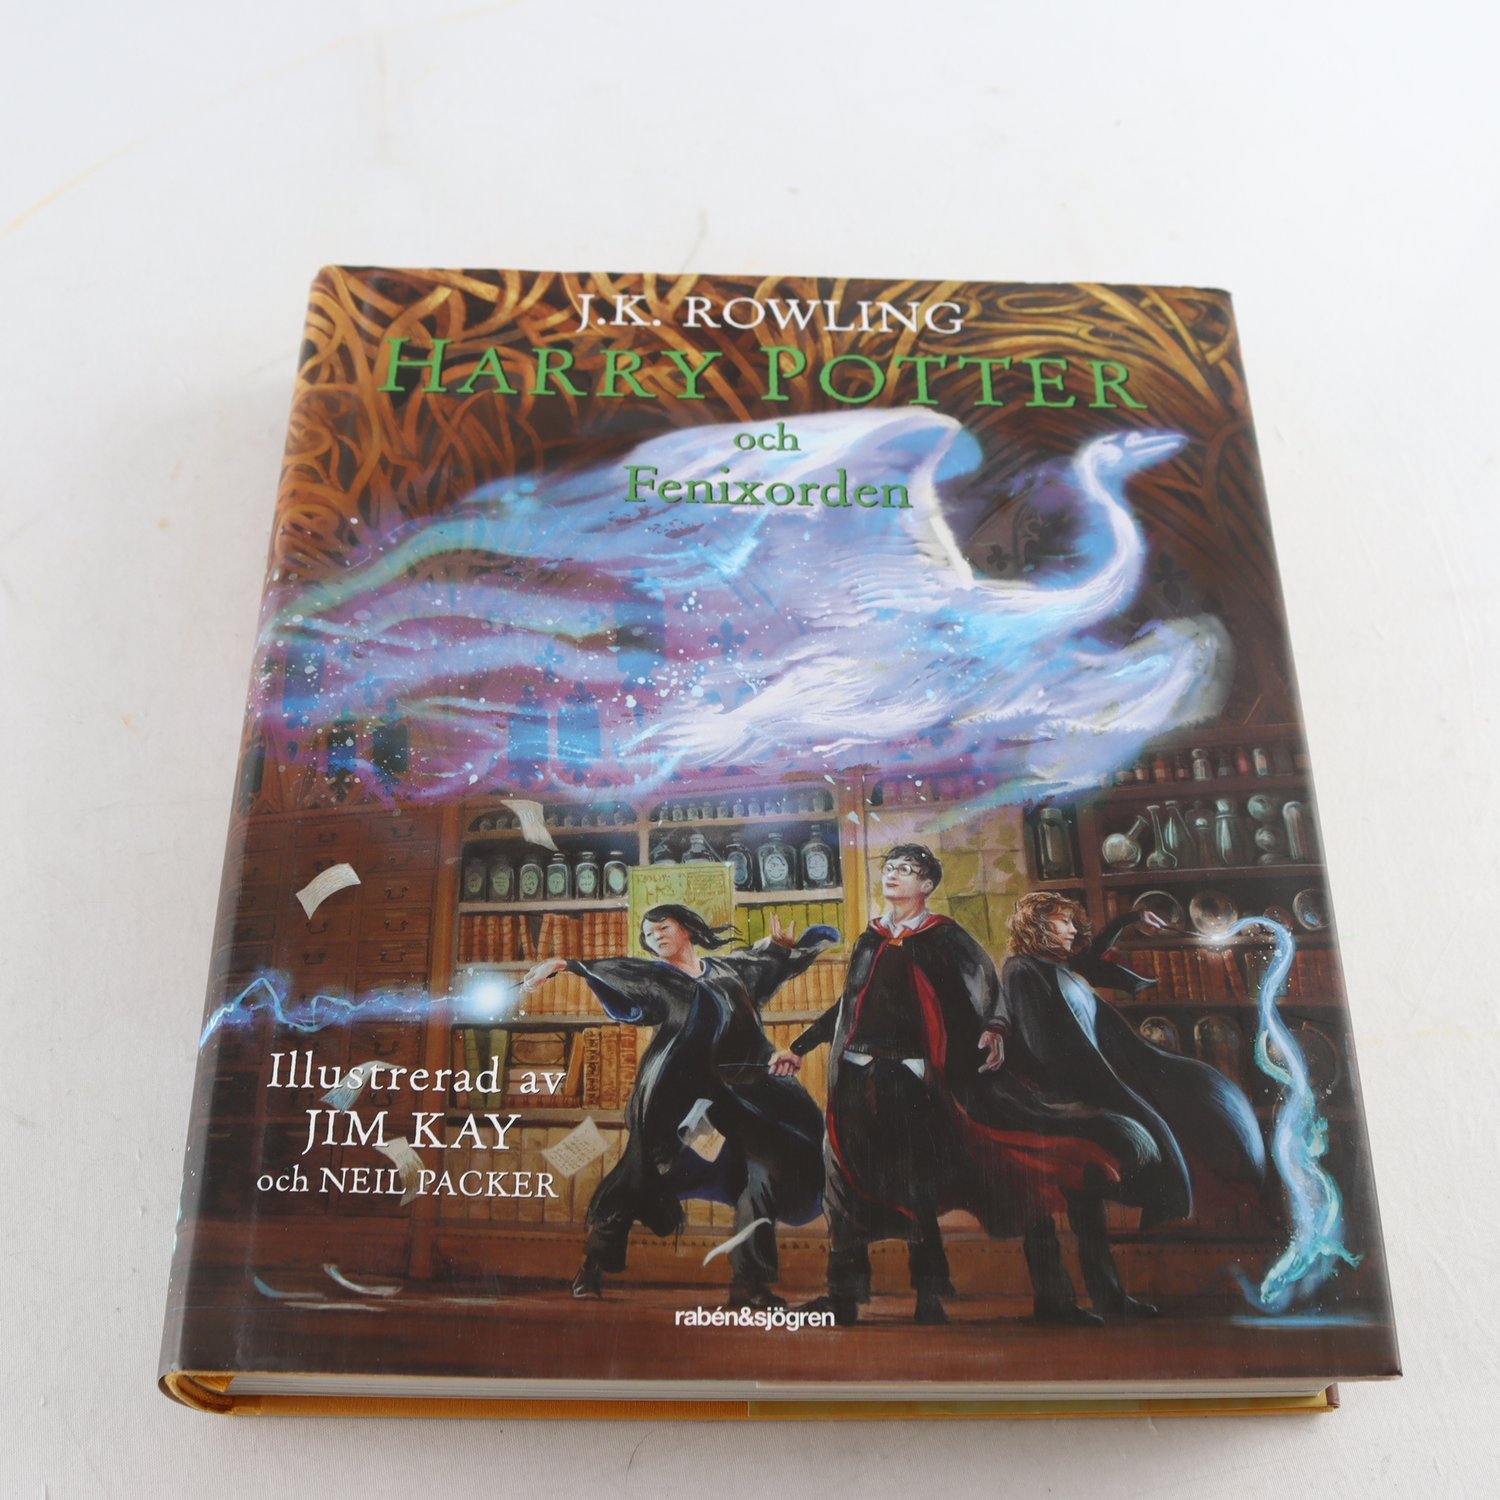 J.K. Rowling, Harry Potter och Fenixorden, ill. Jim Kay & Neil Packer